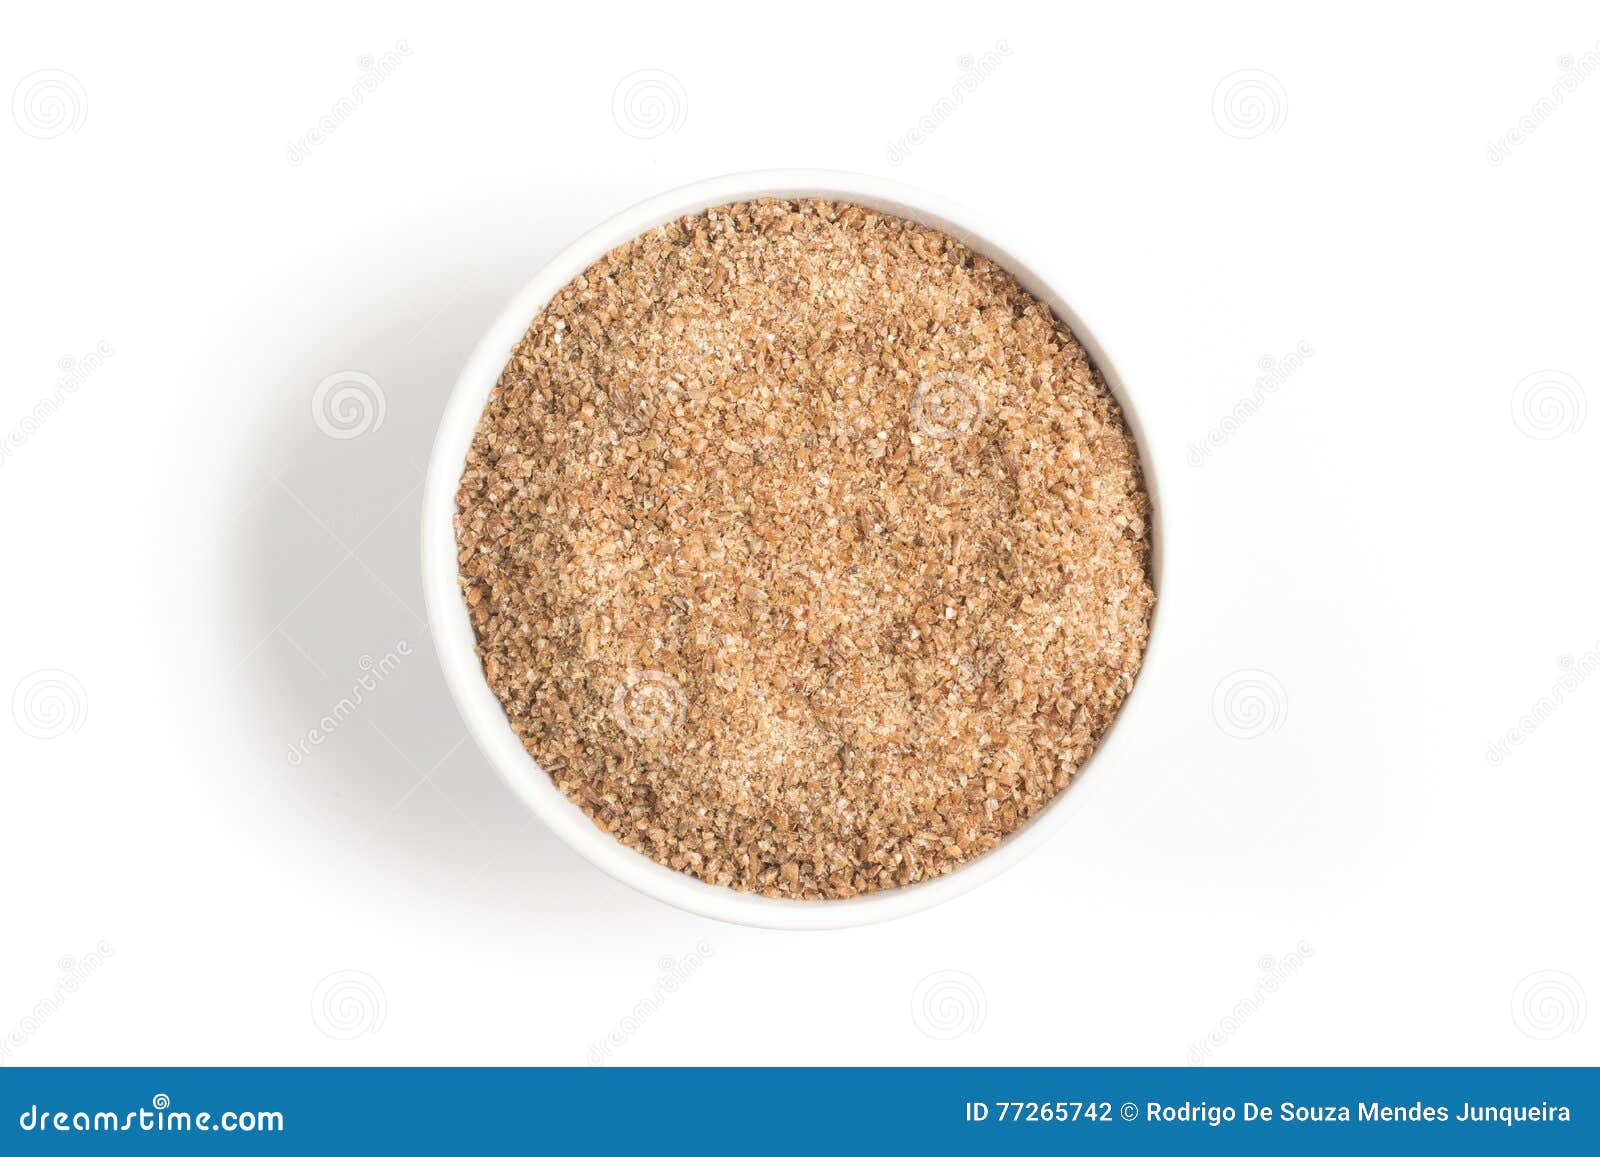 ground wheat into a bowl. trigo para quibe. kibbeh